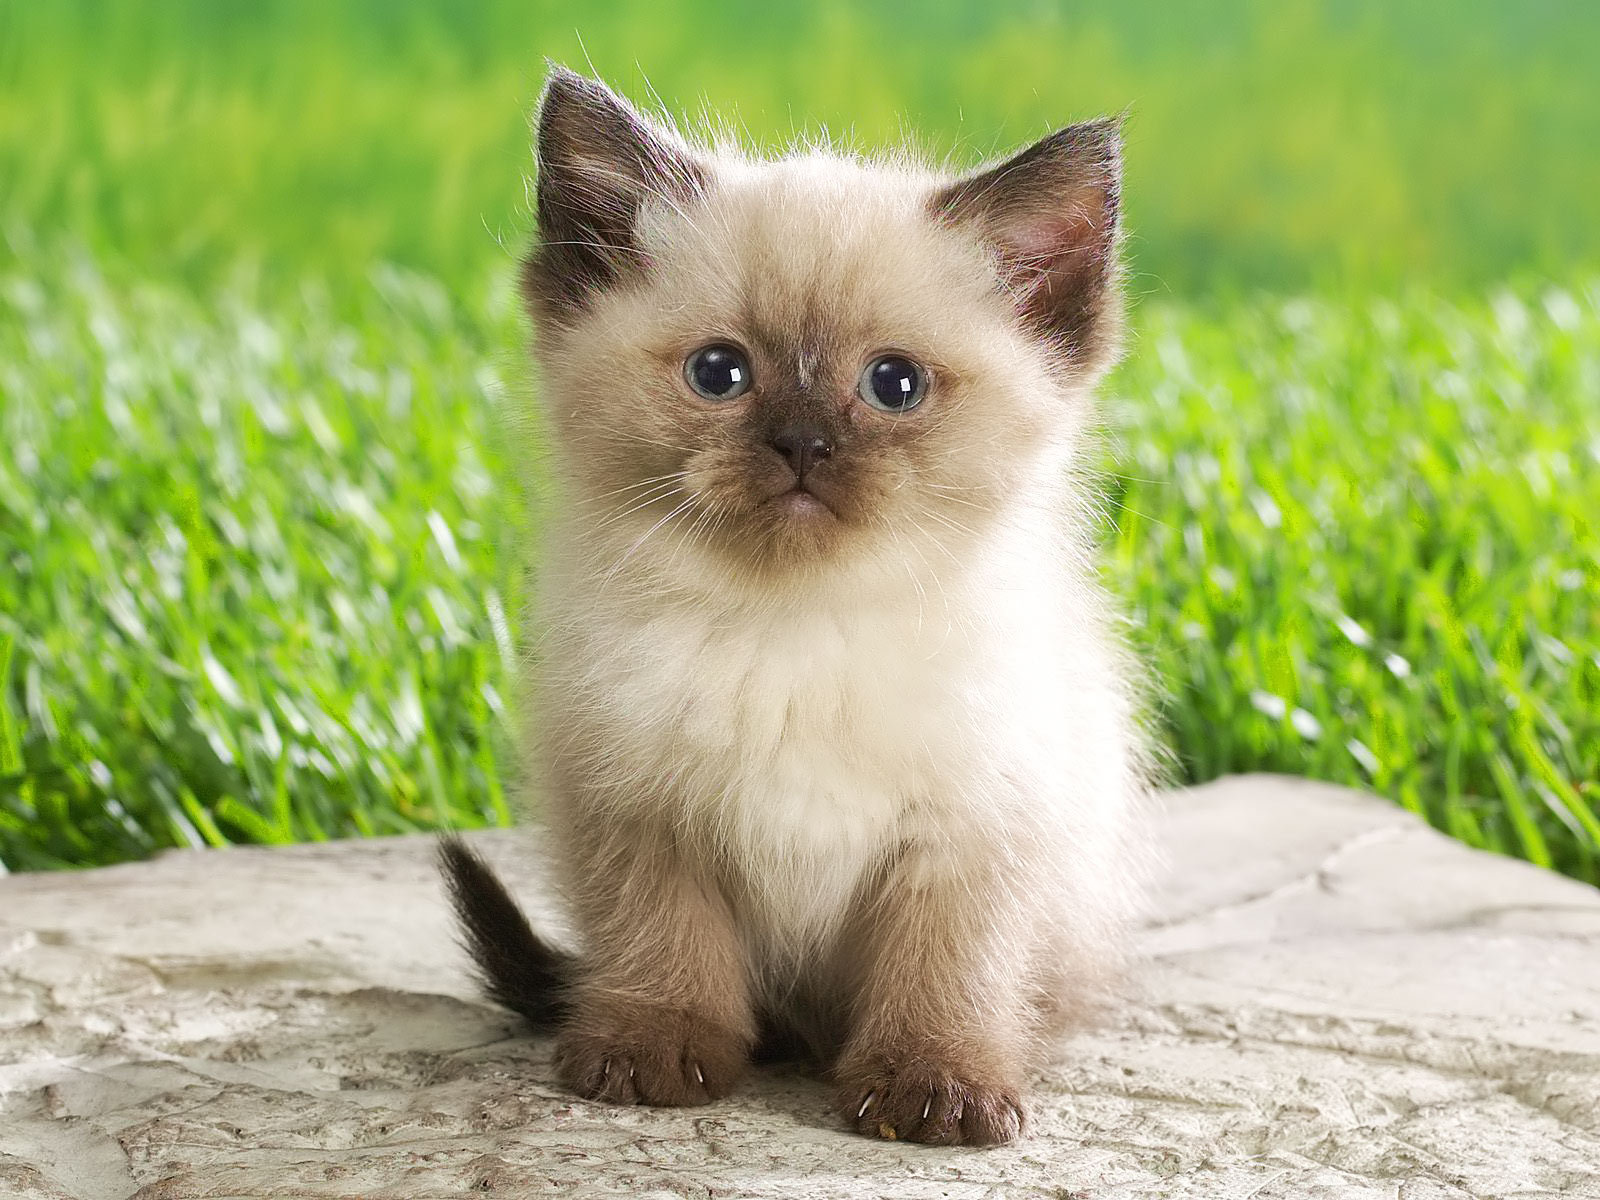 Cute Kitten   Babies Pets and Animals Wallpaper 16731266